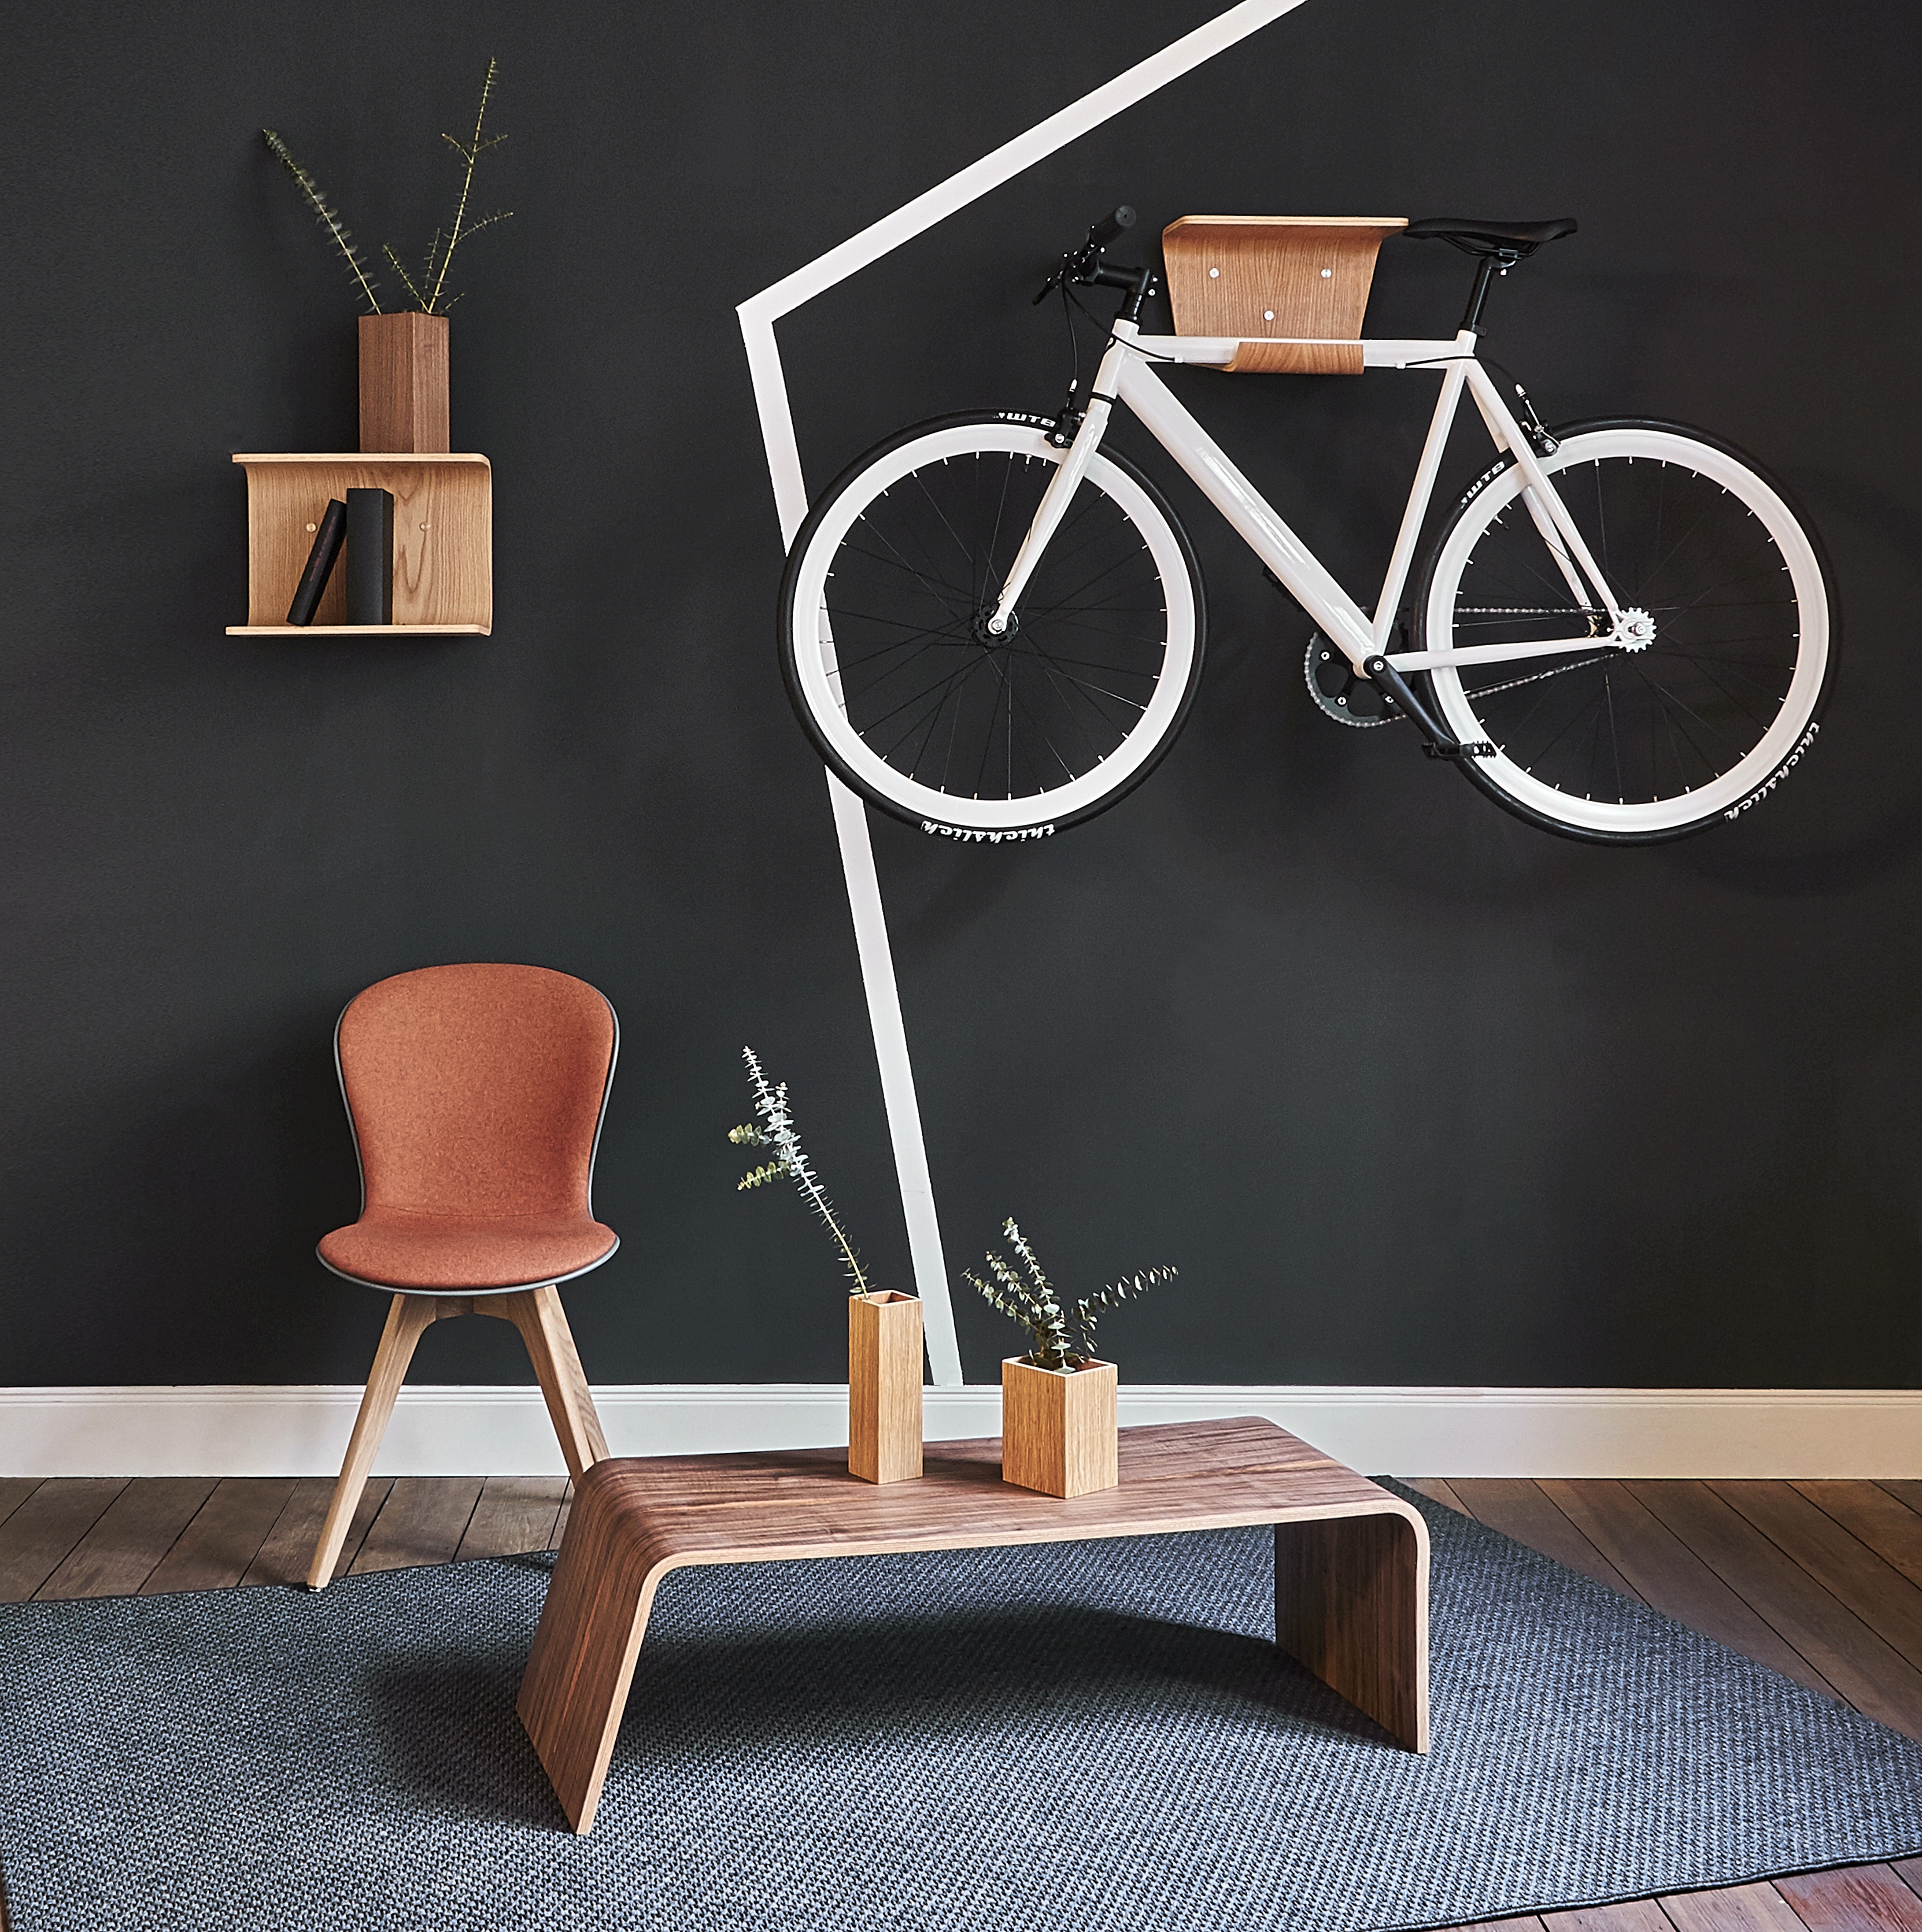 Made by BENT – Nyt dansk design du skal holde øje med